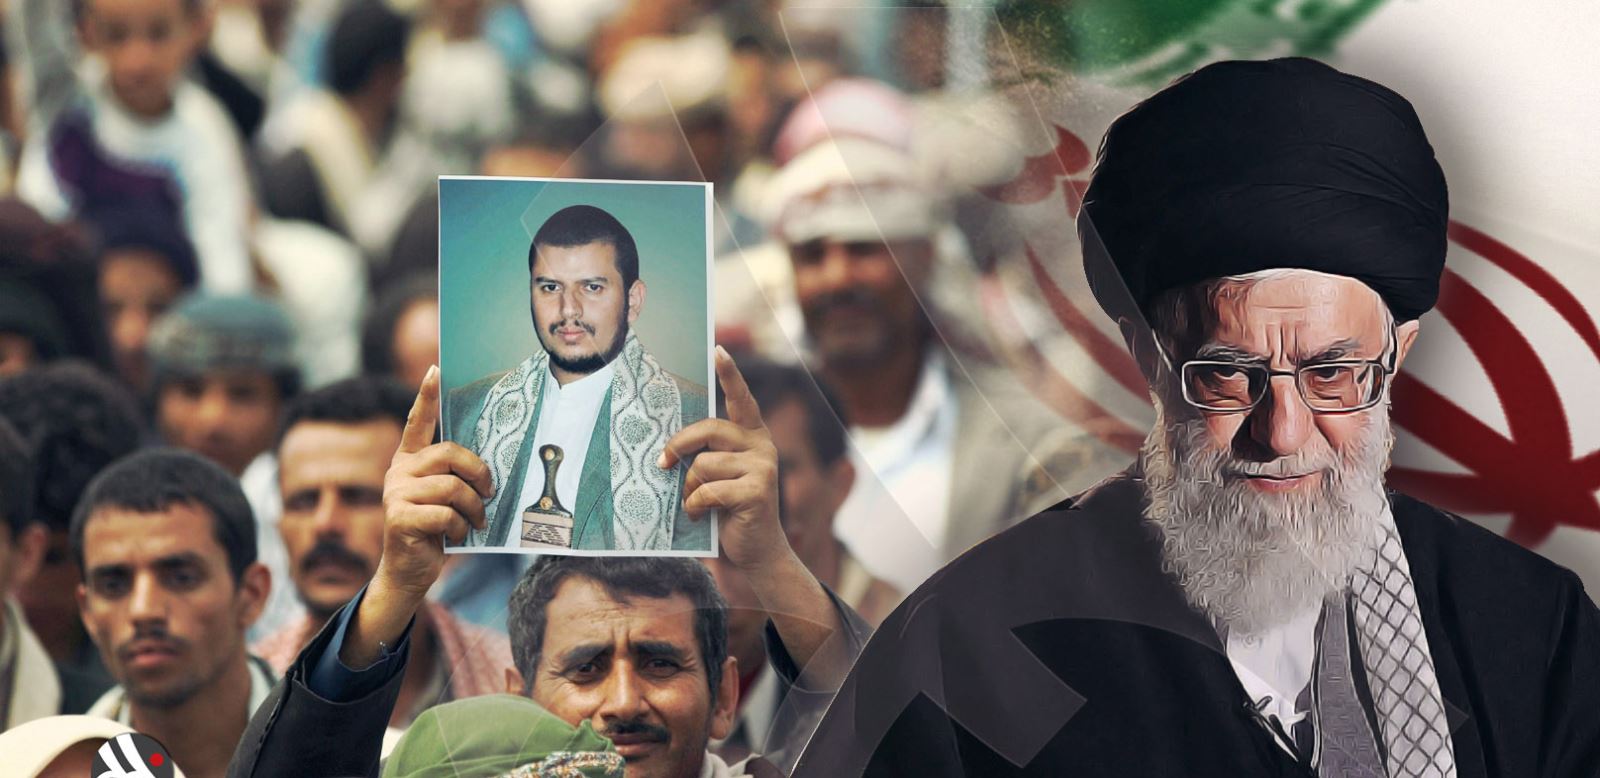 الحوثيين ذراع إيراني خبيث يعبث بمستقبل اليمن